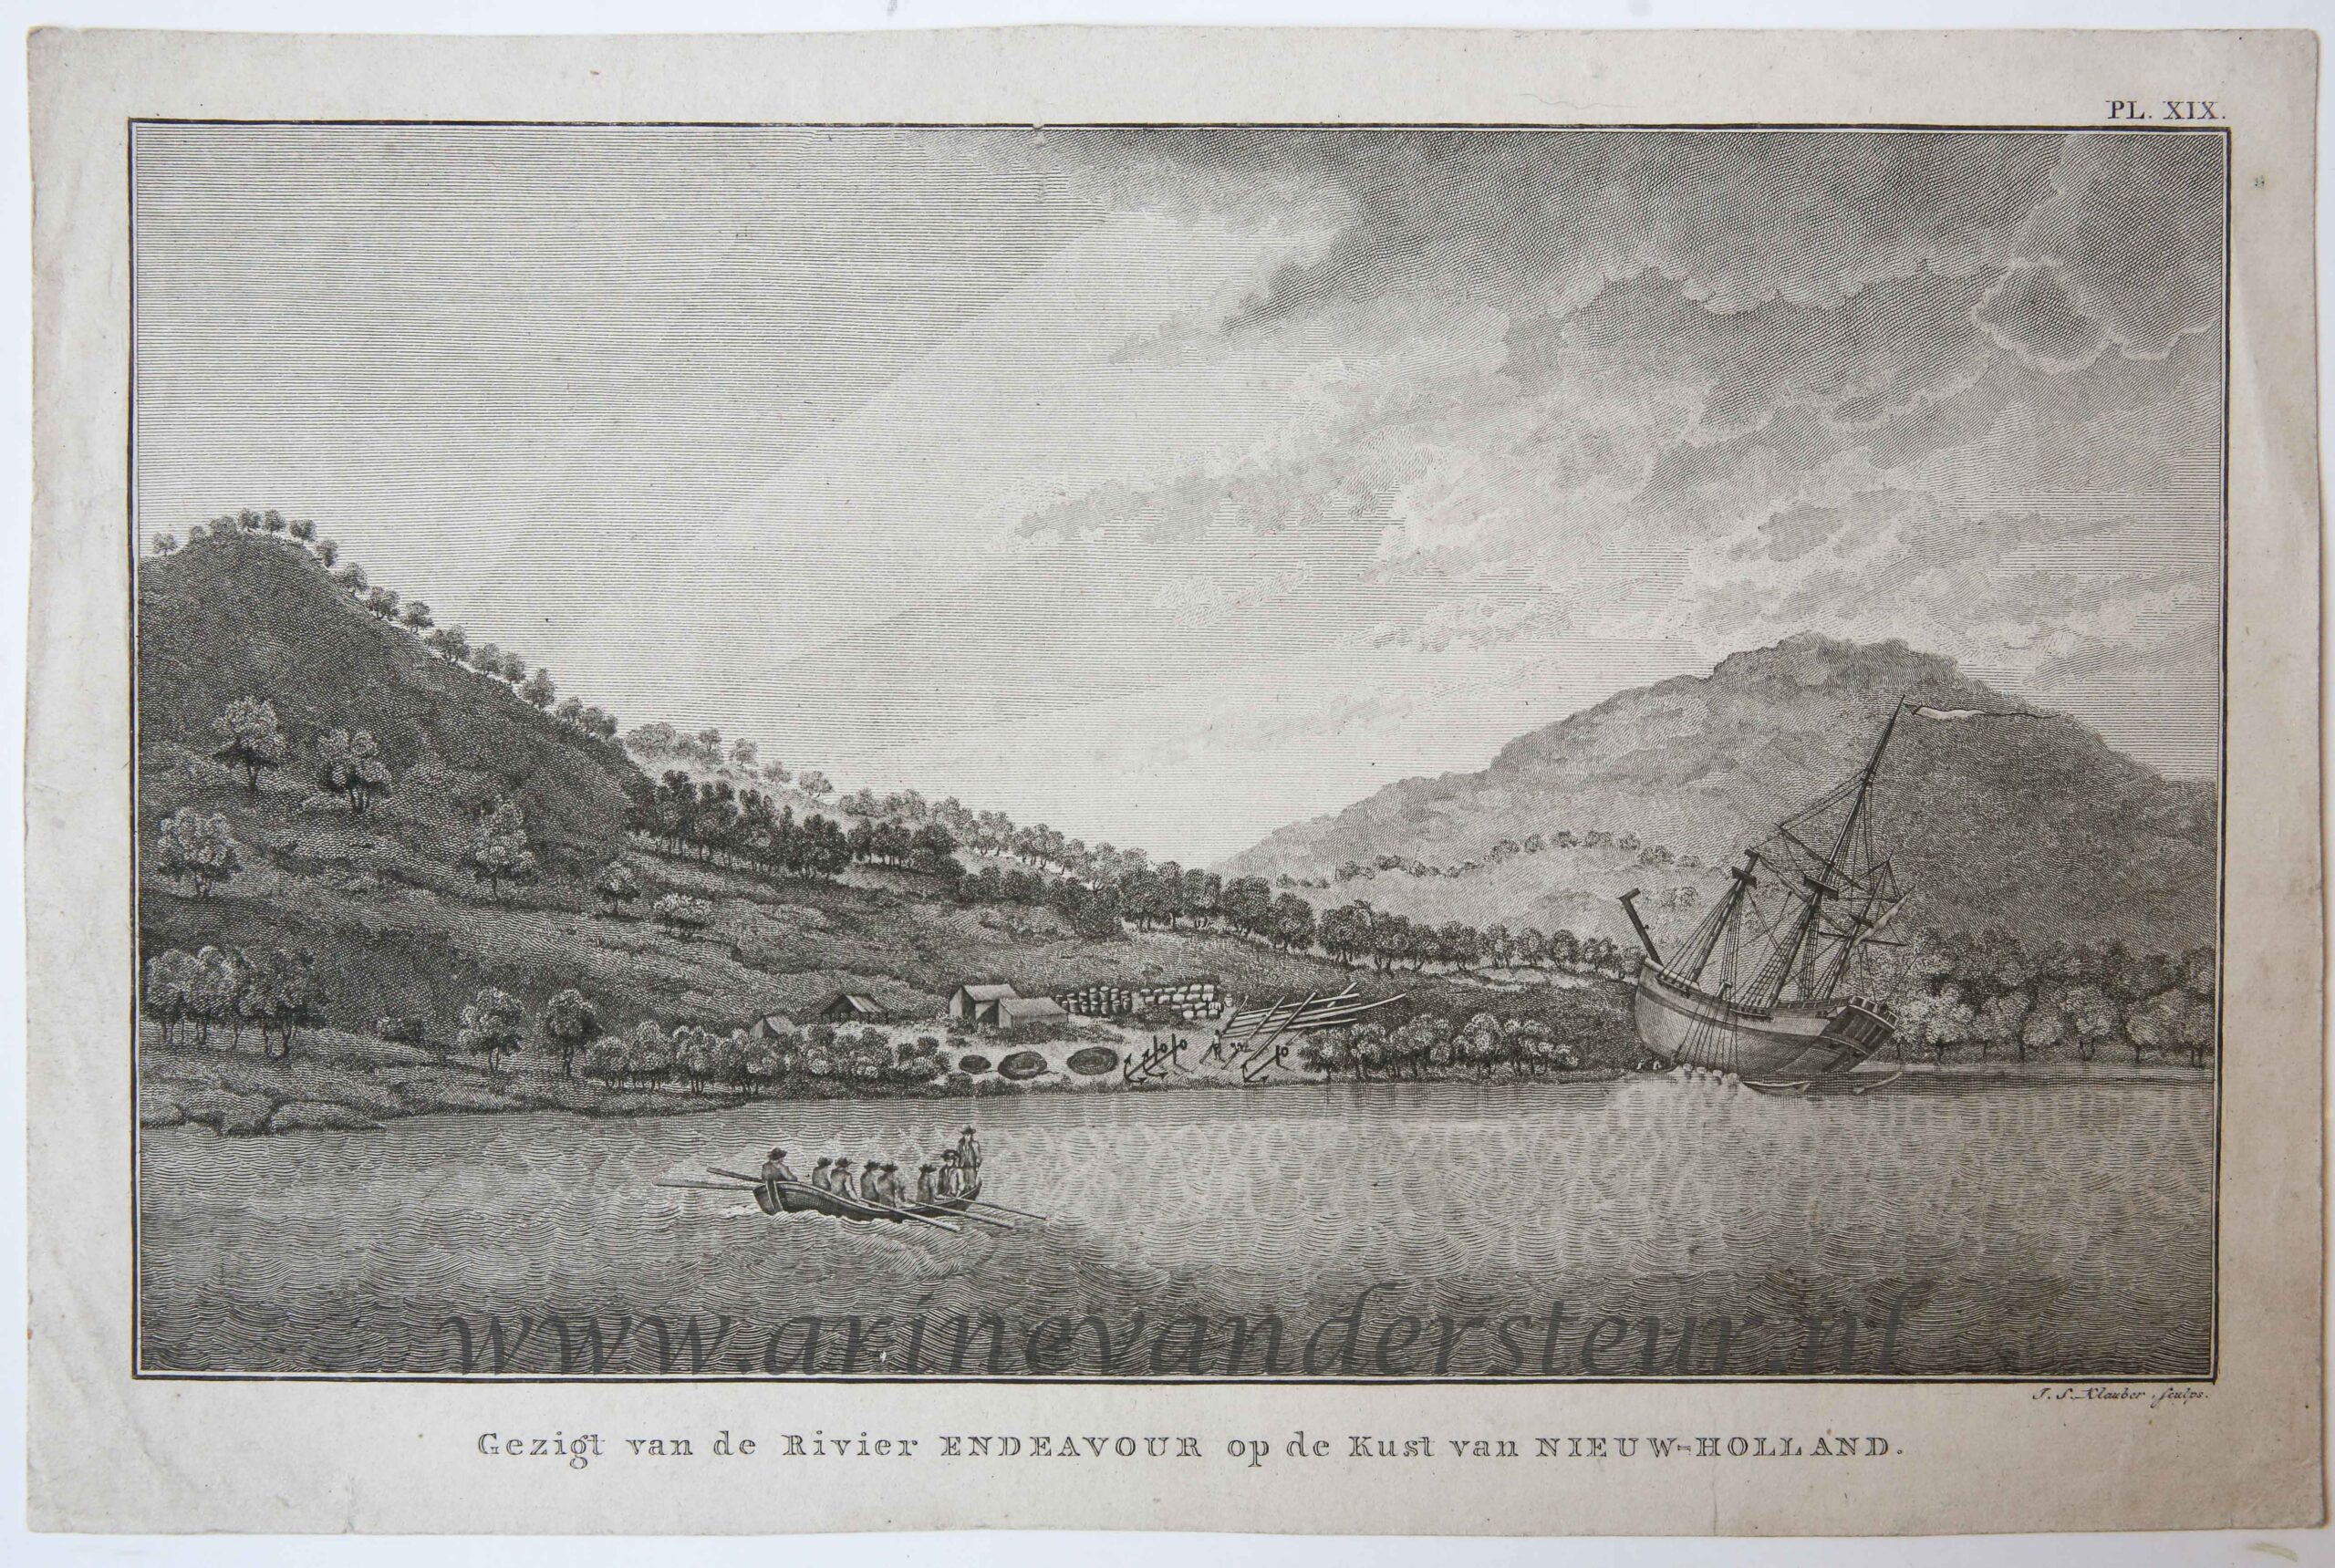 [Antique etching, ets] I.S. Klauber, Gezigt van de Rivier Endeavour op de Kust van Nieuw-Holland, published 1798.